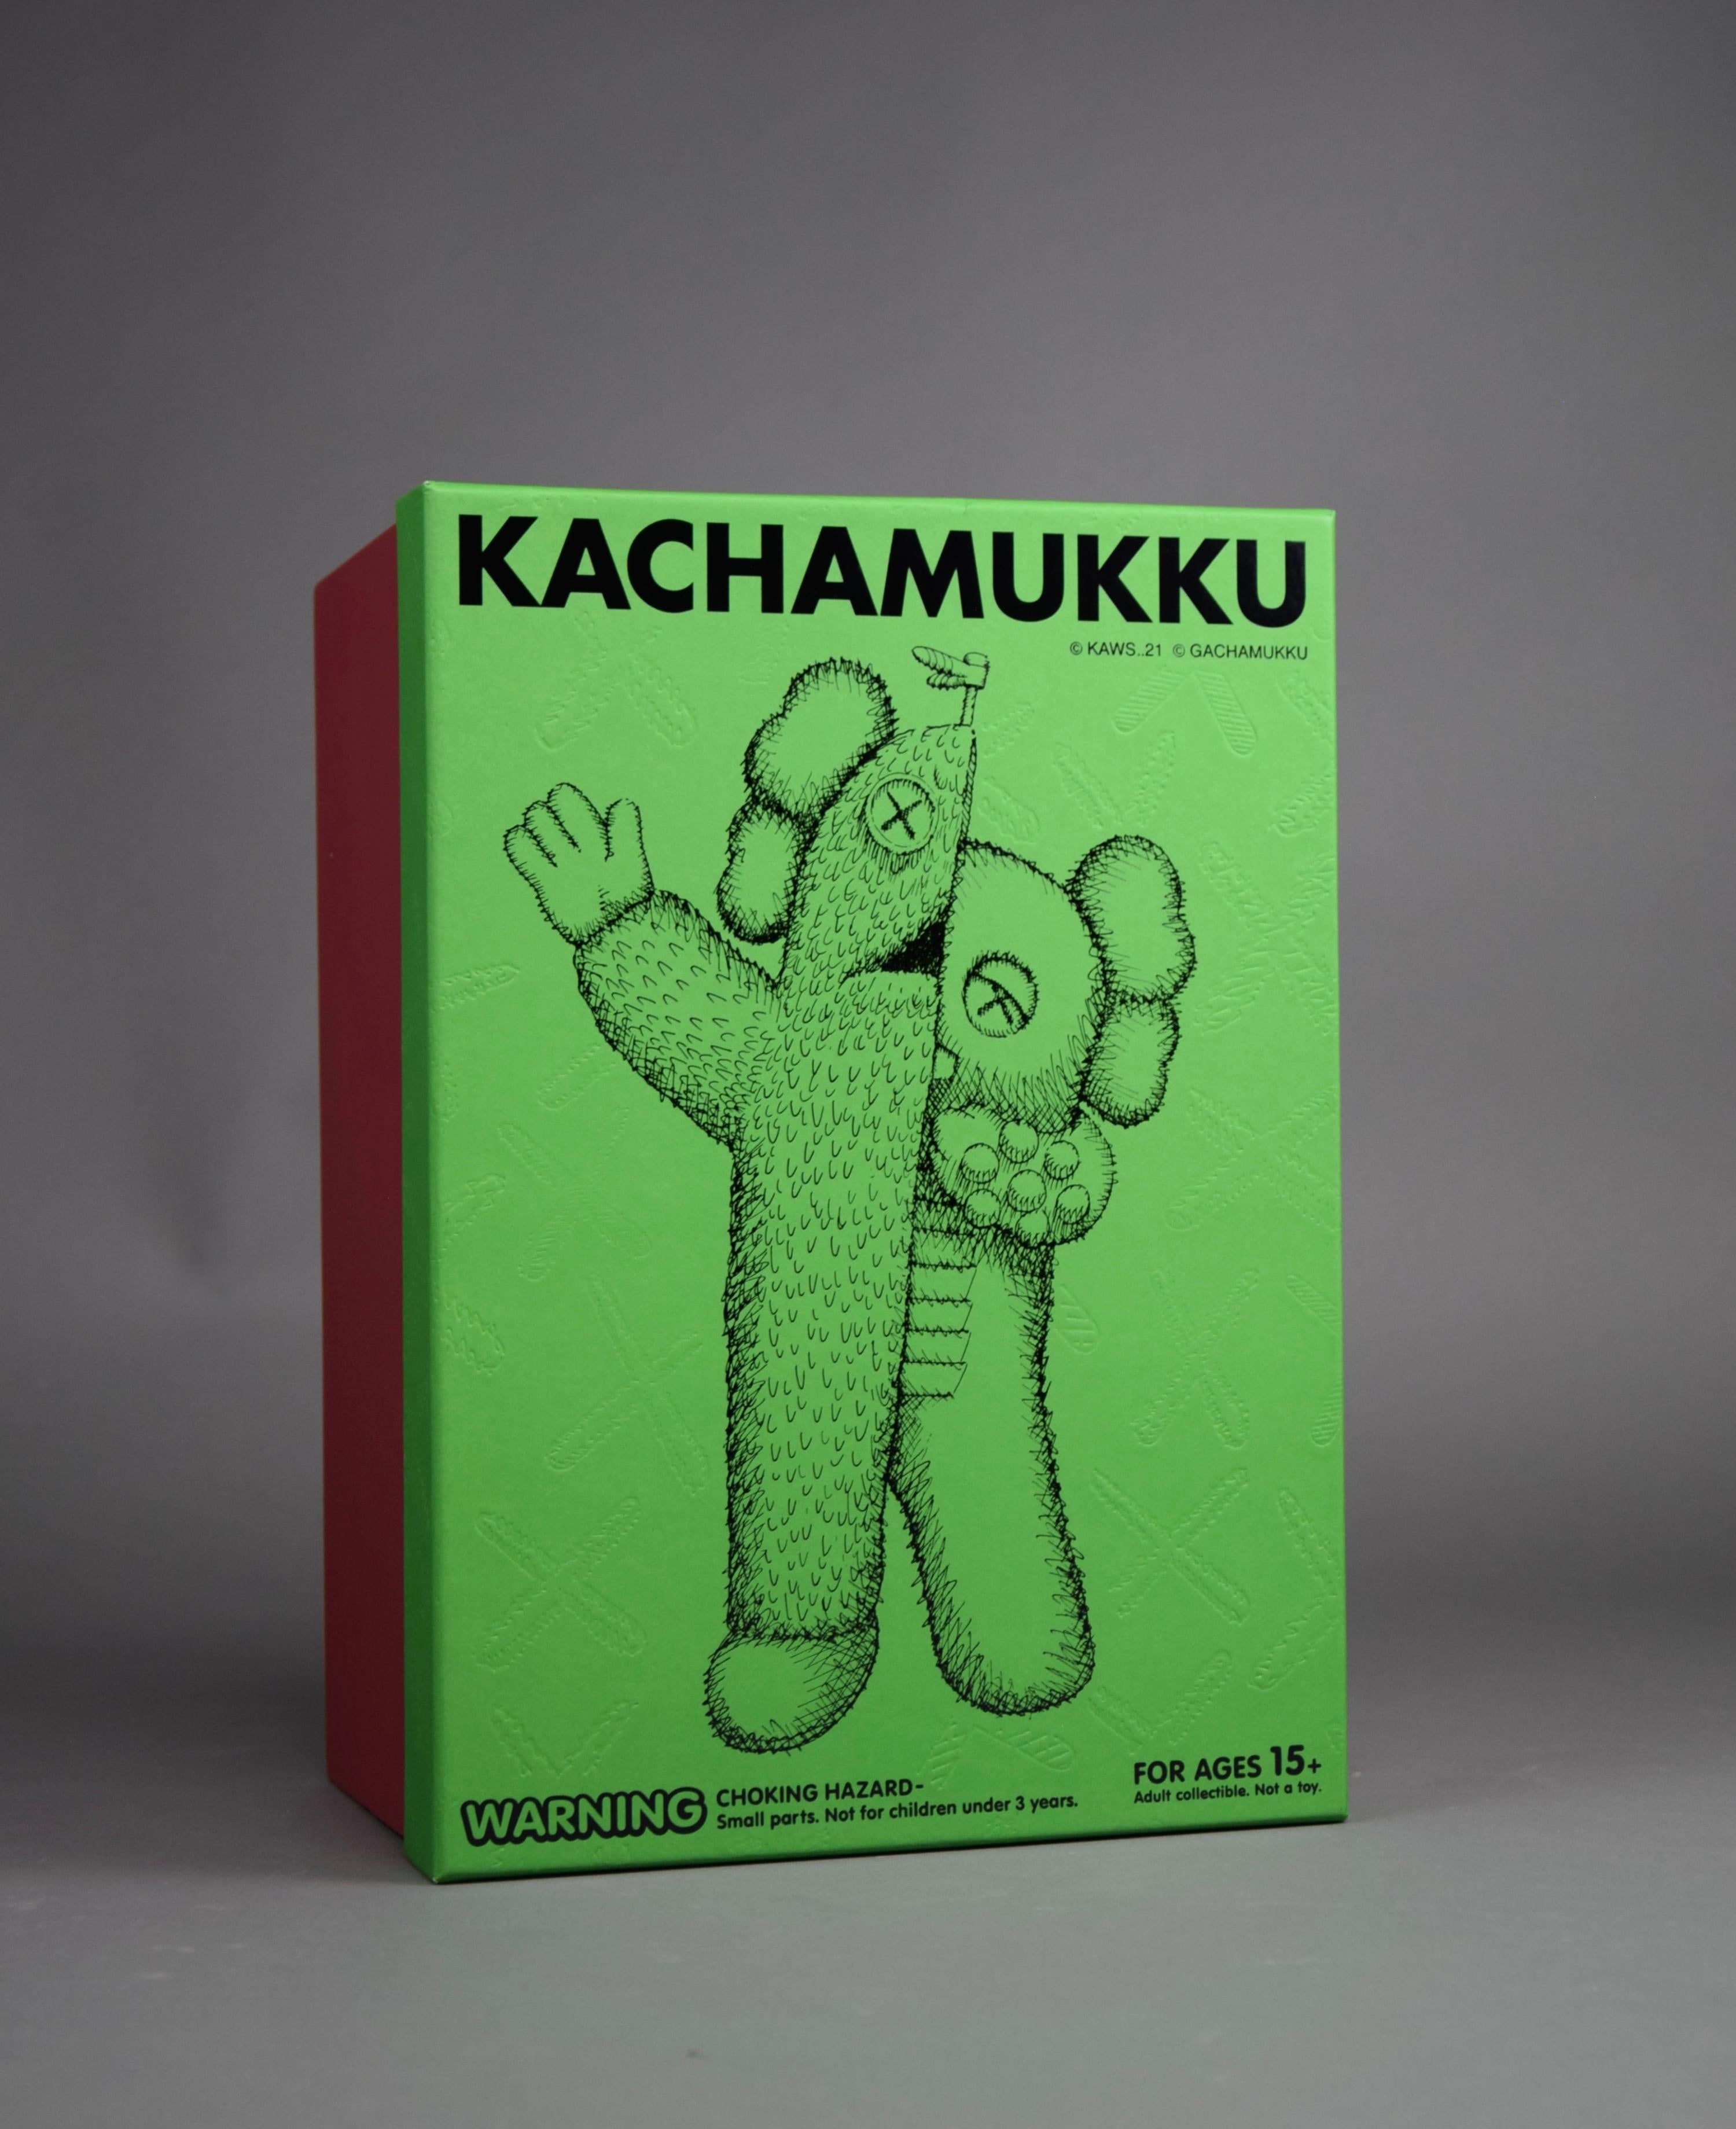 Kachamukku Designer Toy by KAWS - Where Art Meets Imagination !

Êtes-vous prêt à élever votre Collectional à un tout autre niveau de brillance artistique ? Ne cherchez plus, car le jouet design Kachamukku de KAWS est là pour captiver vos sens et